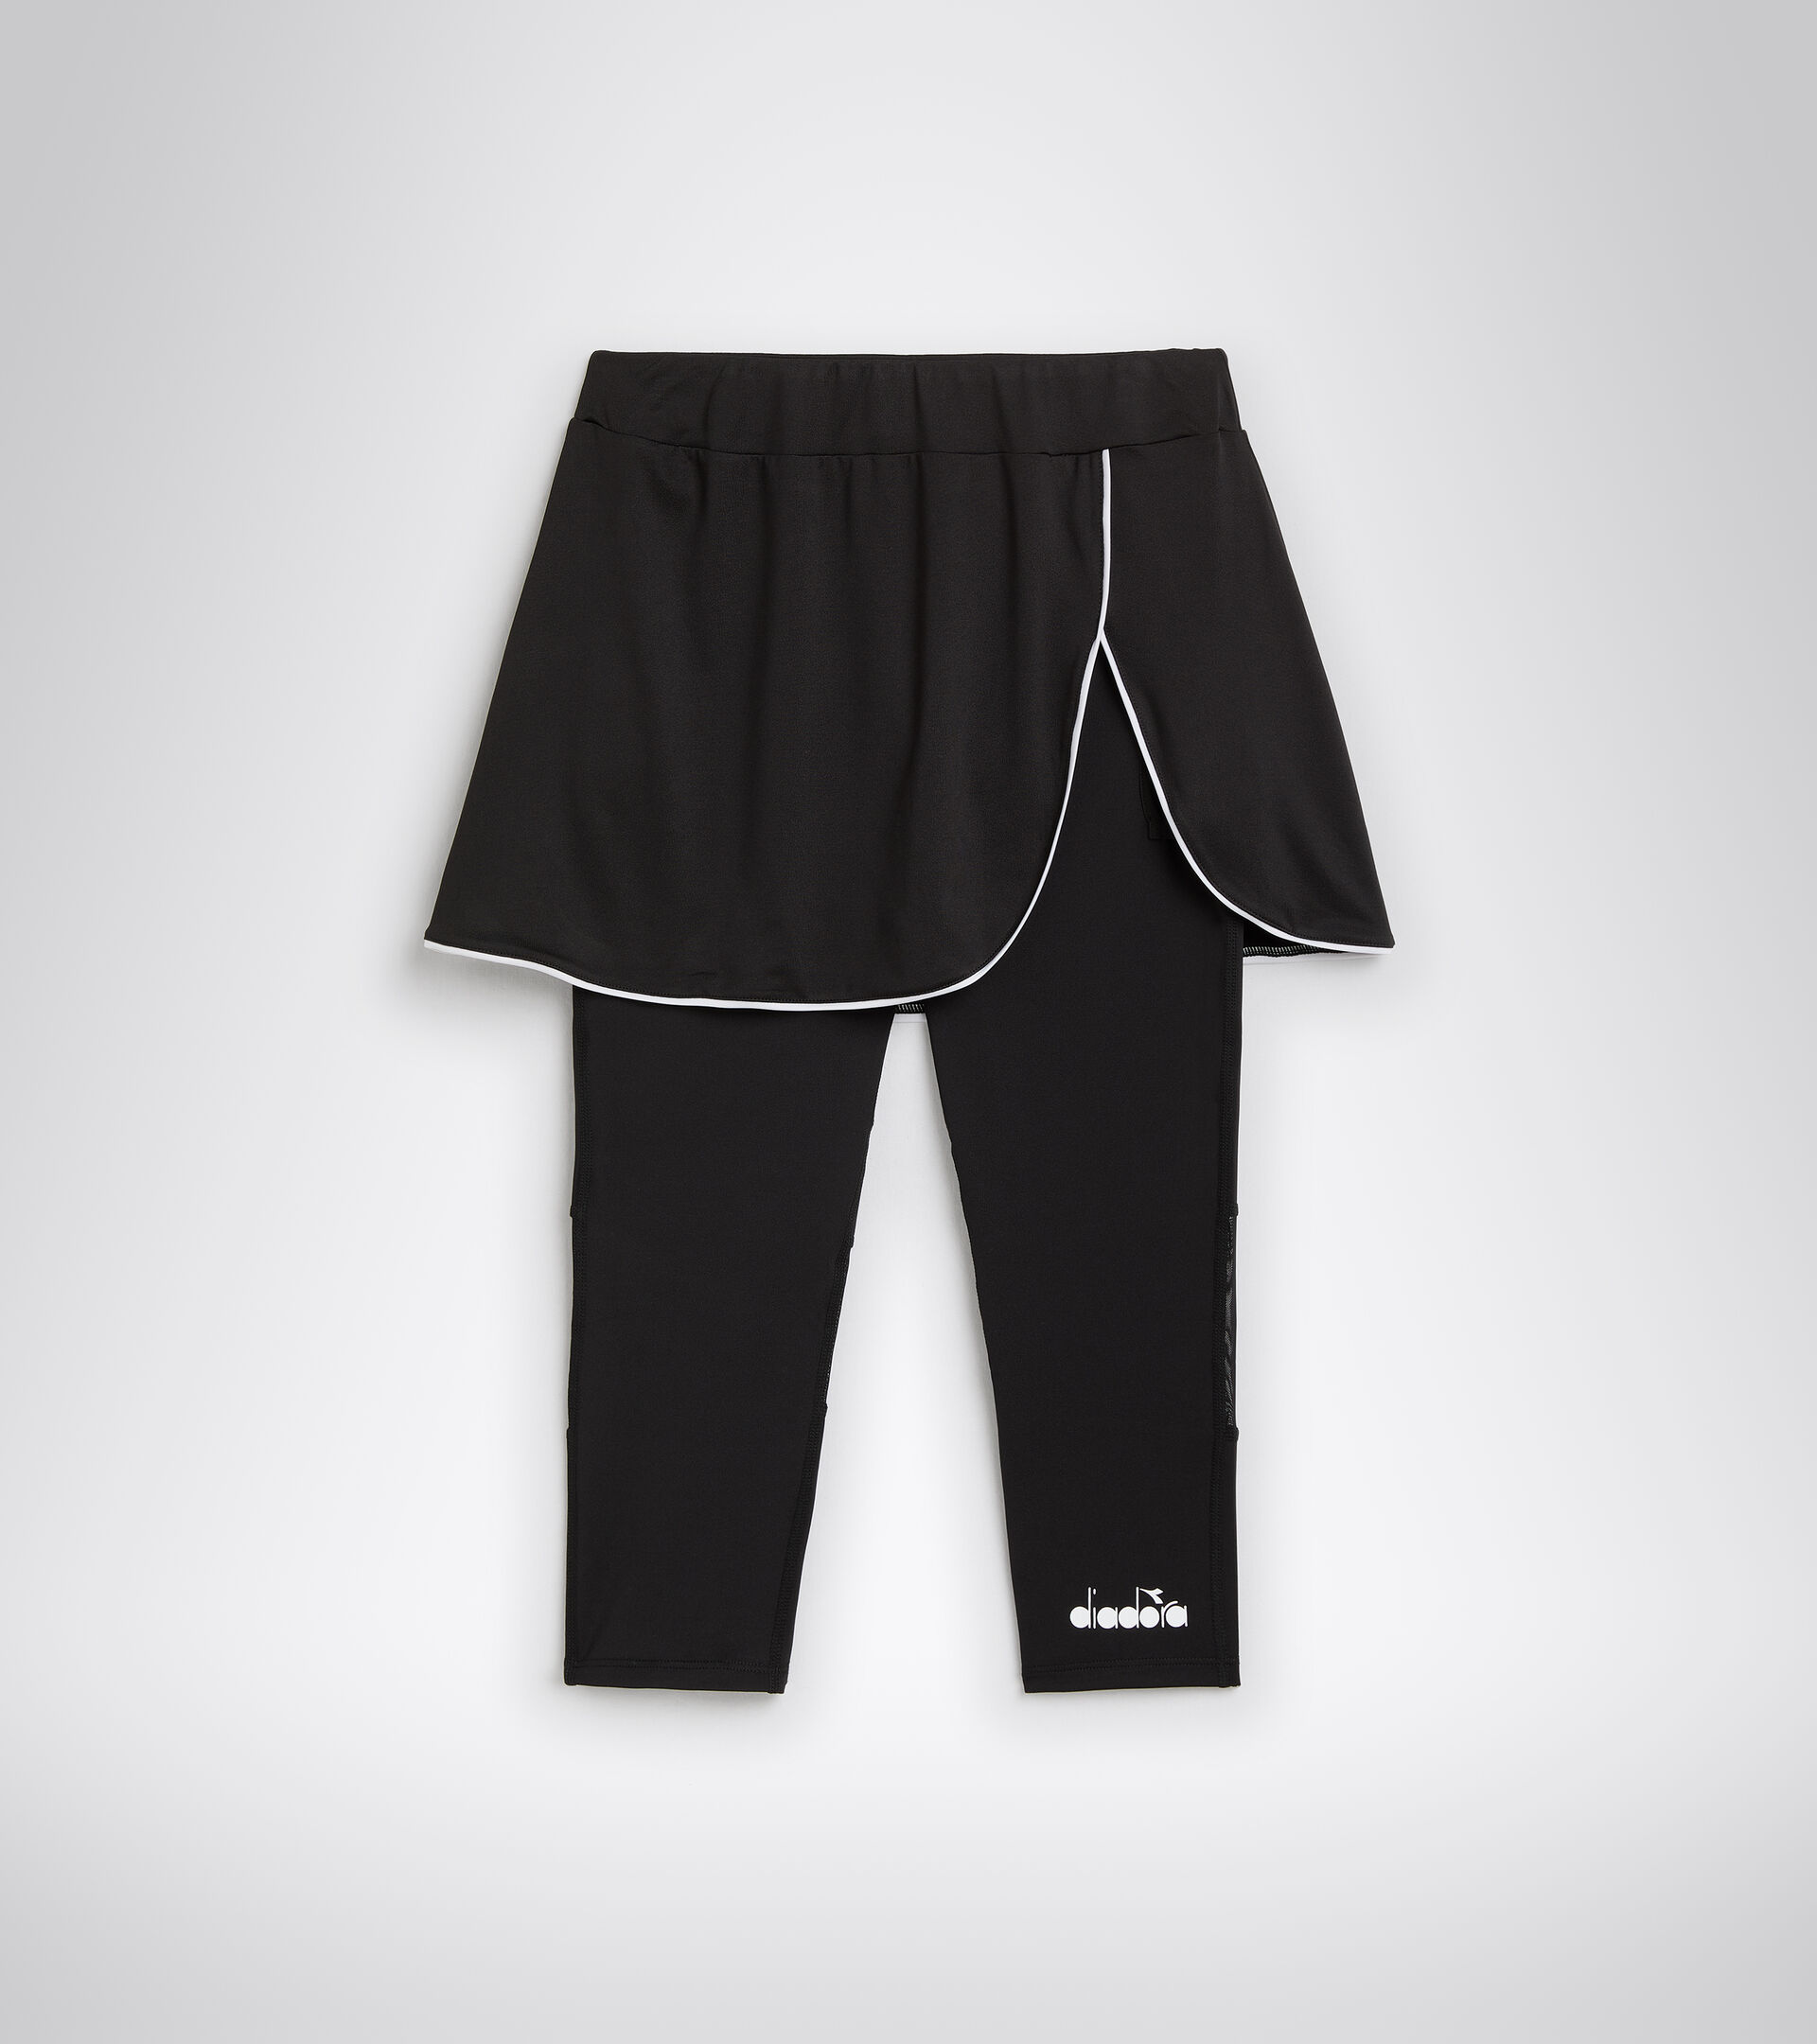 L. POWER SKIRT Polyester tennis skirt - Women - Diadora Online Store US